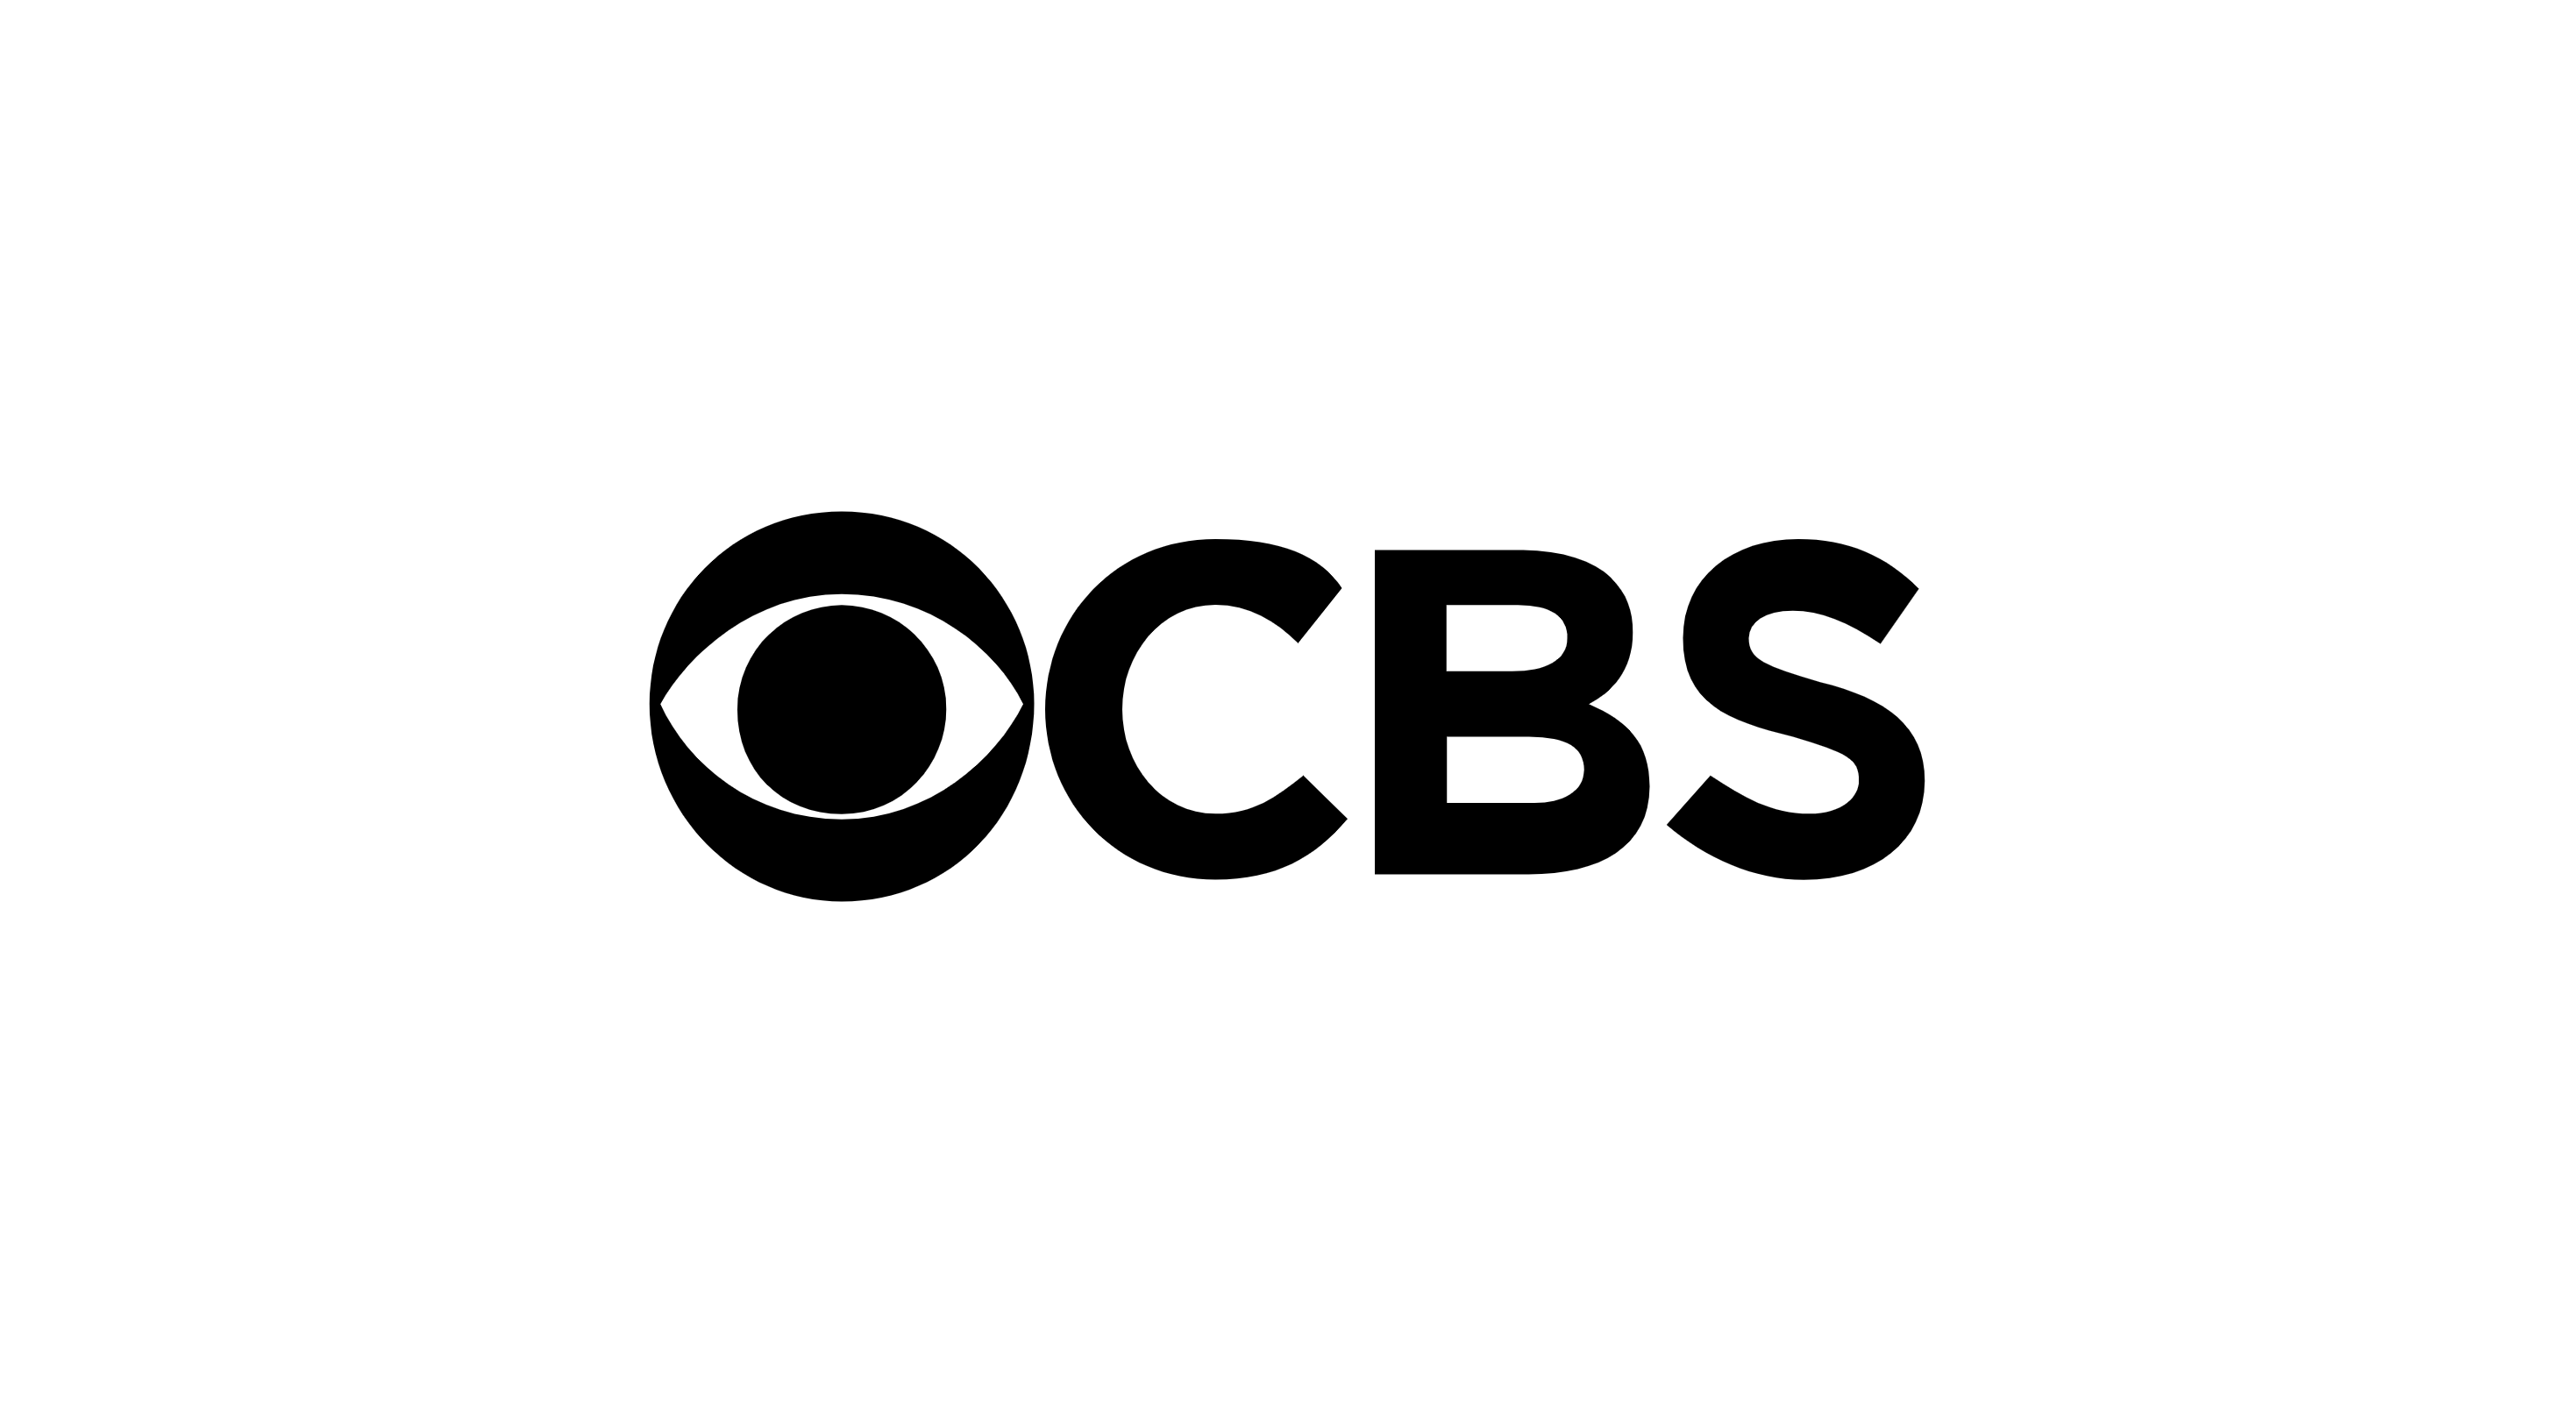  Logotipo de noticias de CBS